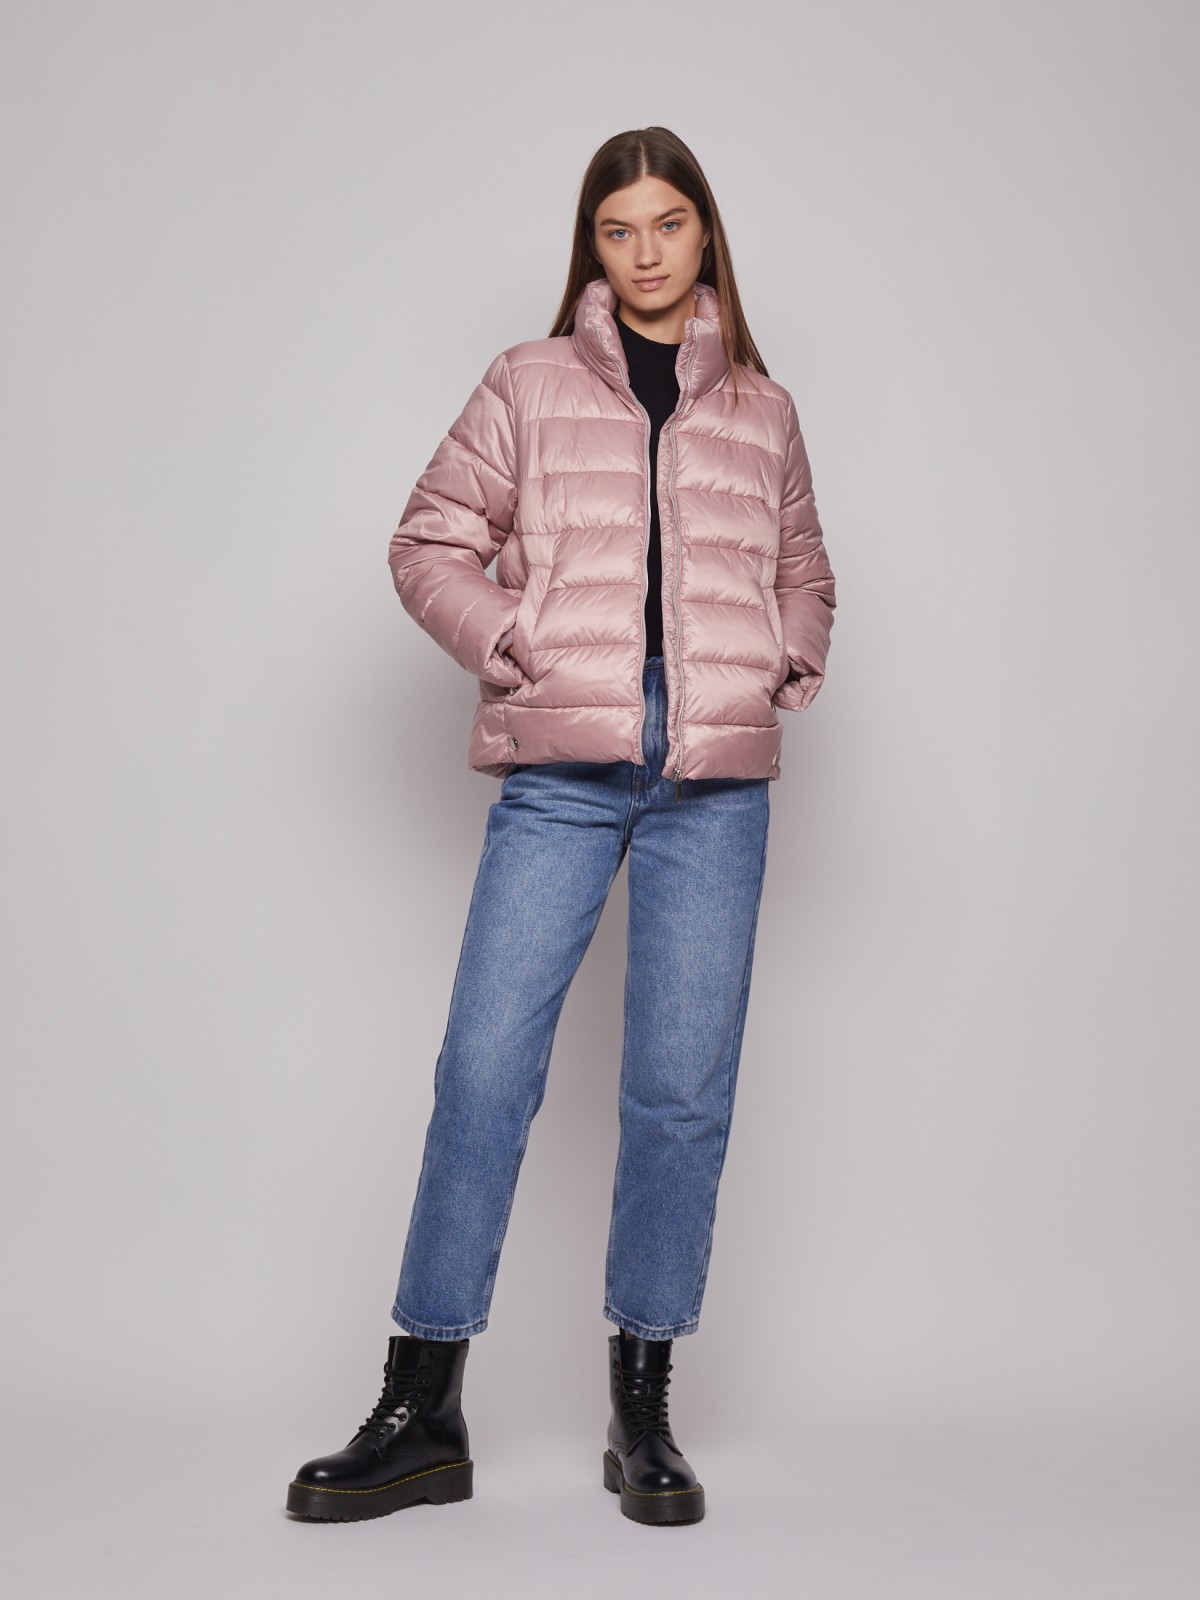 Тёплая куртка с воротником-стойкой zolla 022335102054, цвет розовый, размер XS - фото 2